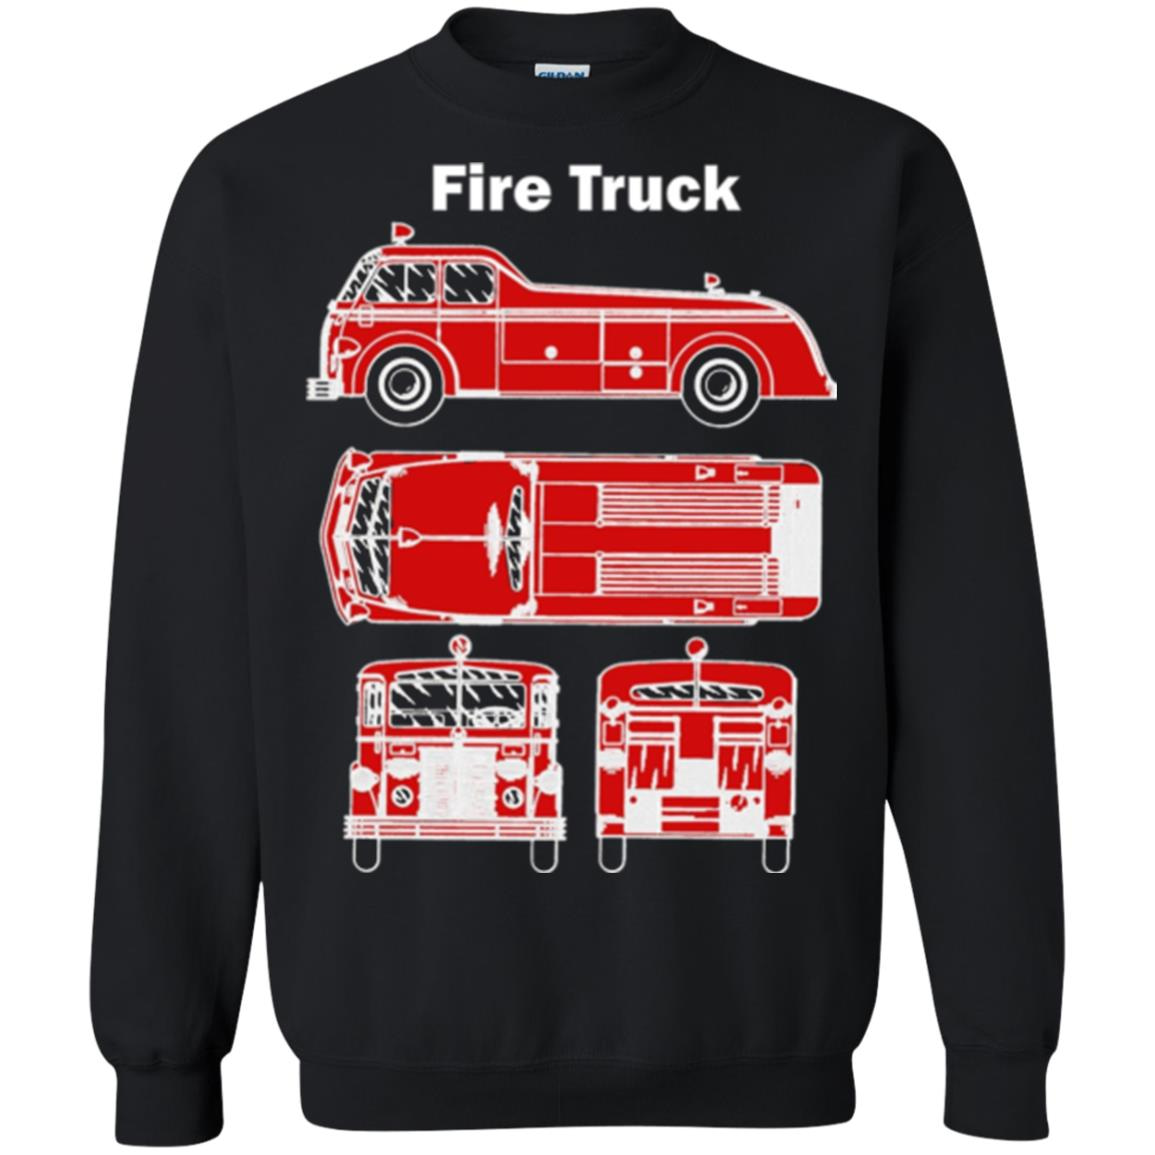 Inktee Store - Fire Truck -1930S Vintage Fire Truck Design Sweatshirt Image